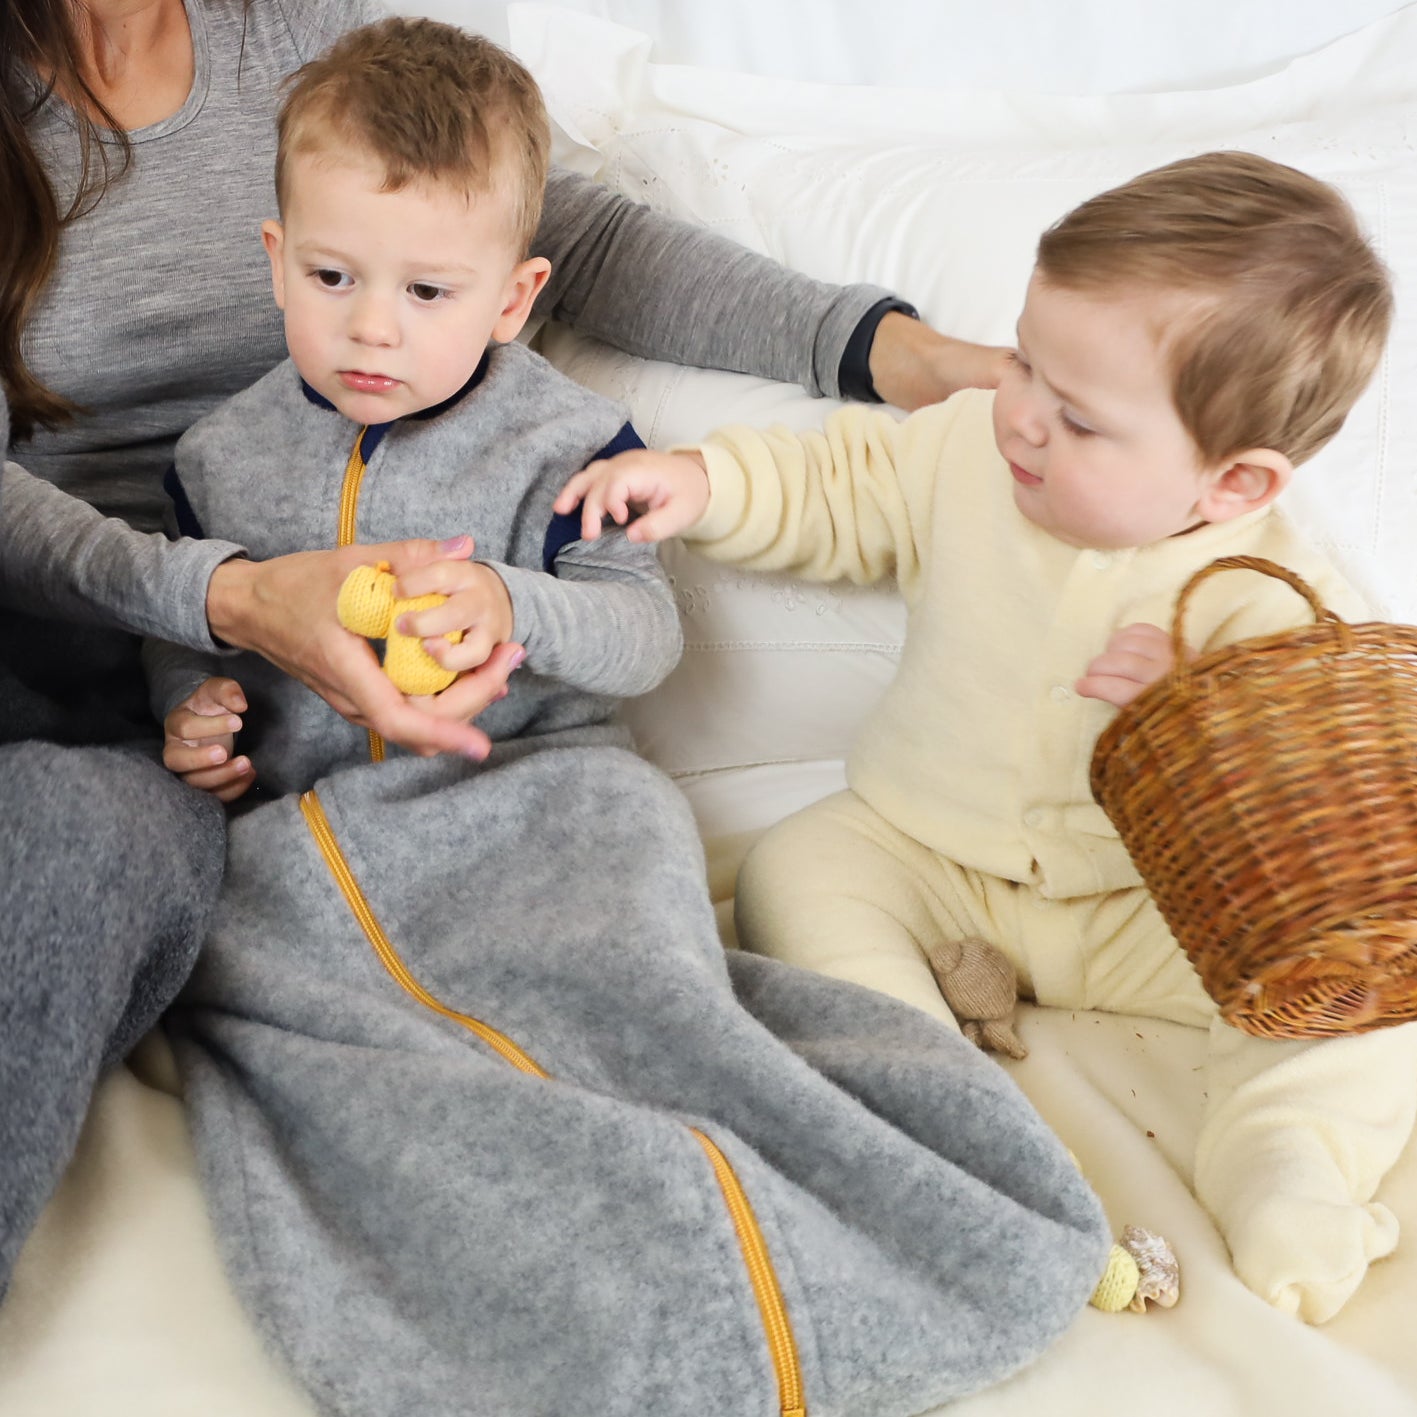 Engel Baby/Toddler Sleep Sack with Zipper, Sleeveless, Fleece